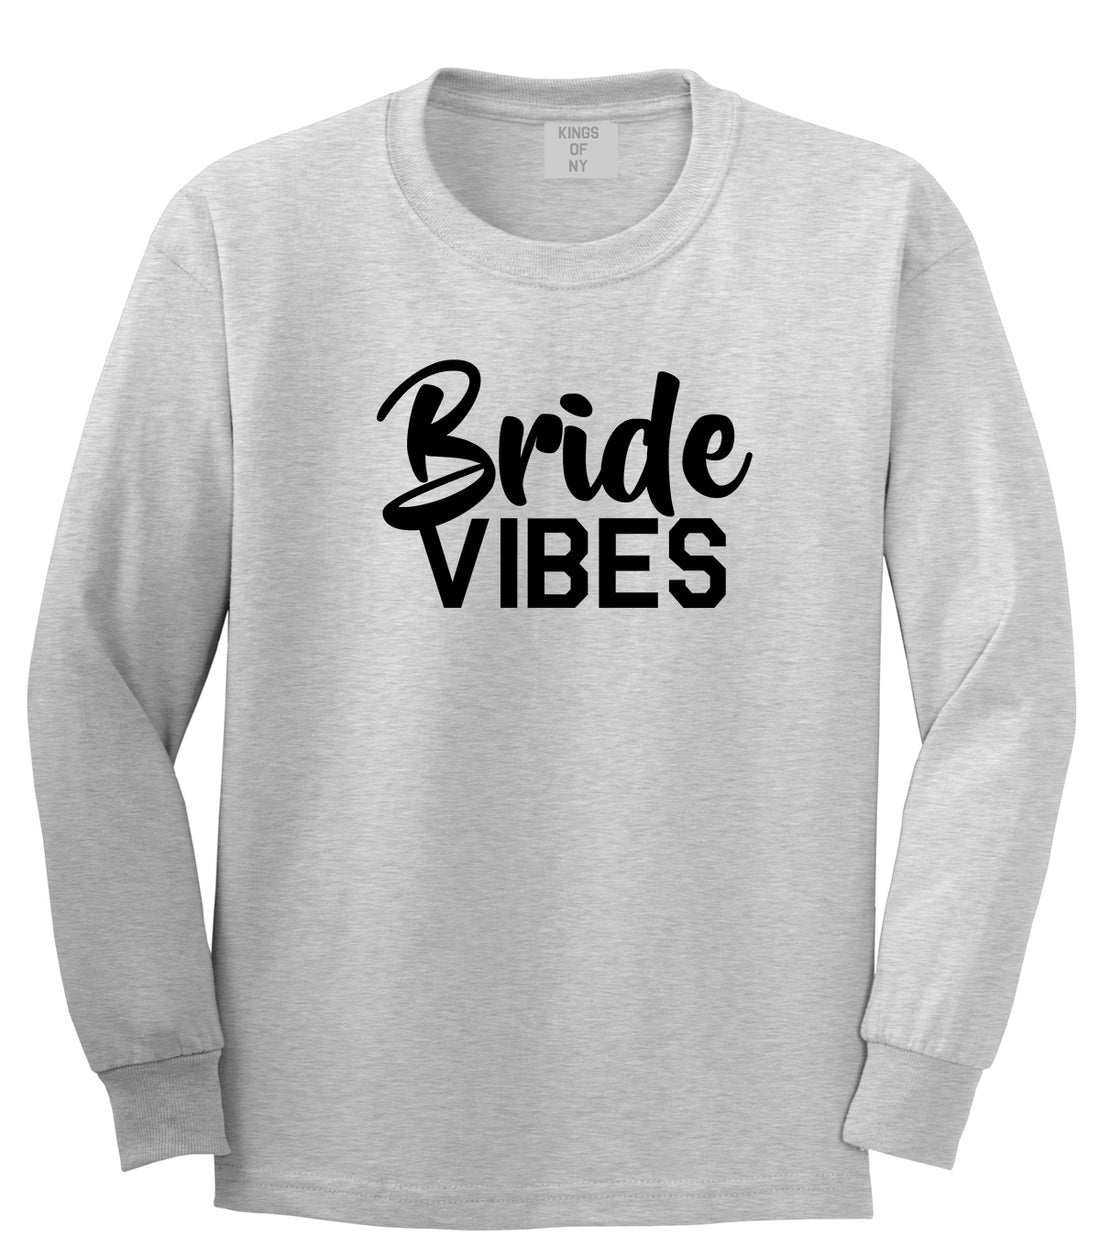 Bride Vibes Bridal Mens Grey Long Sleeve T-Shirt by KINGS OF NY